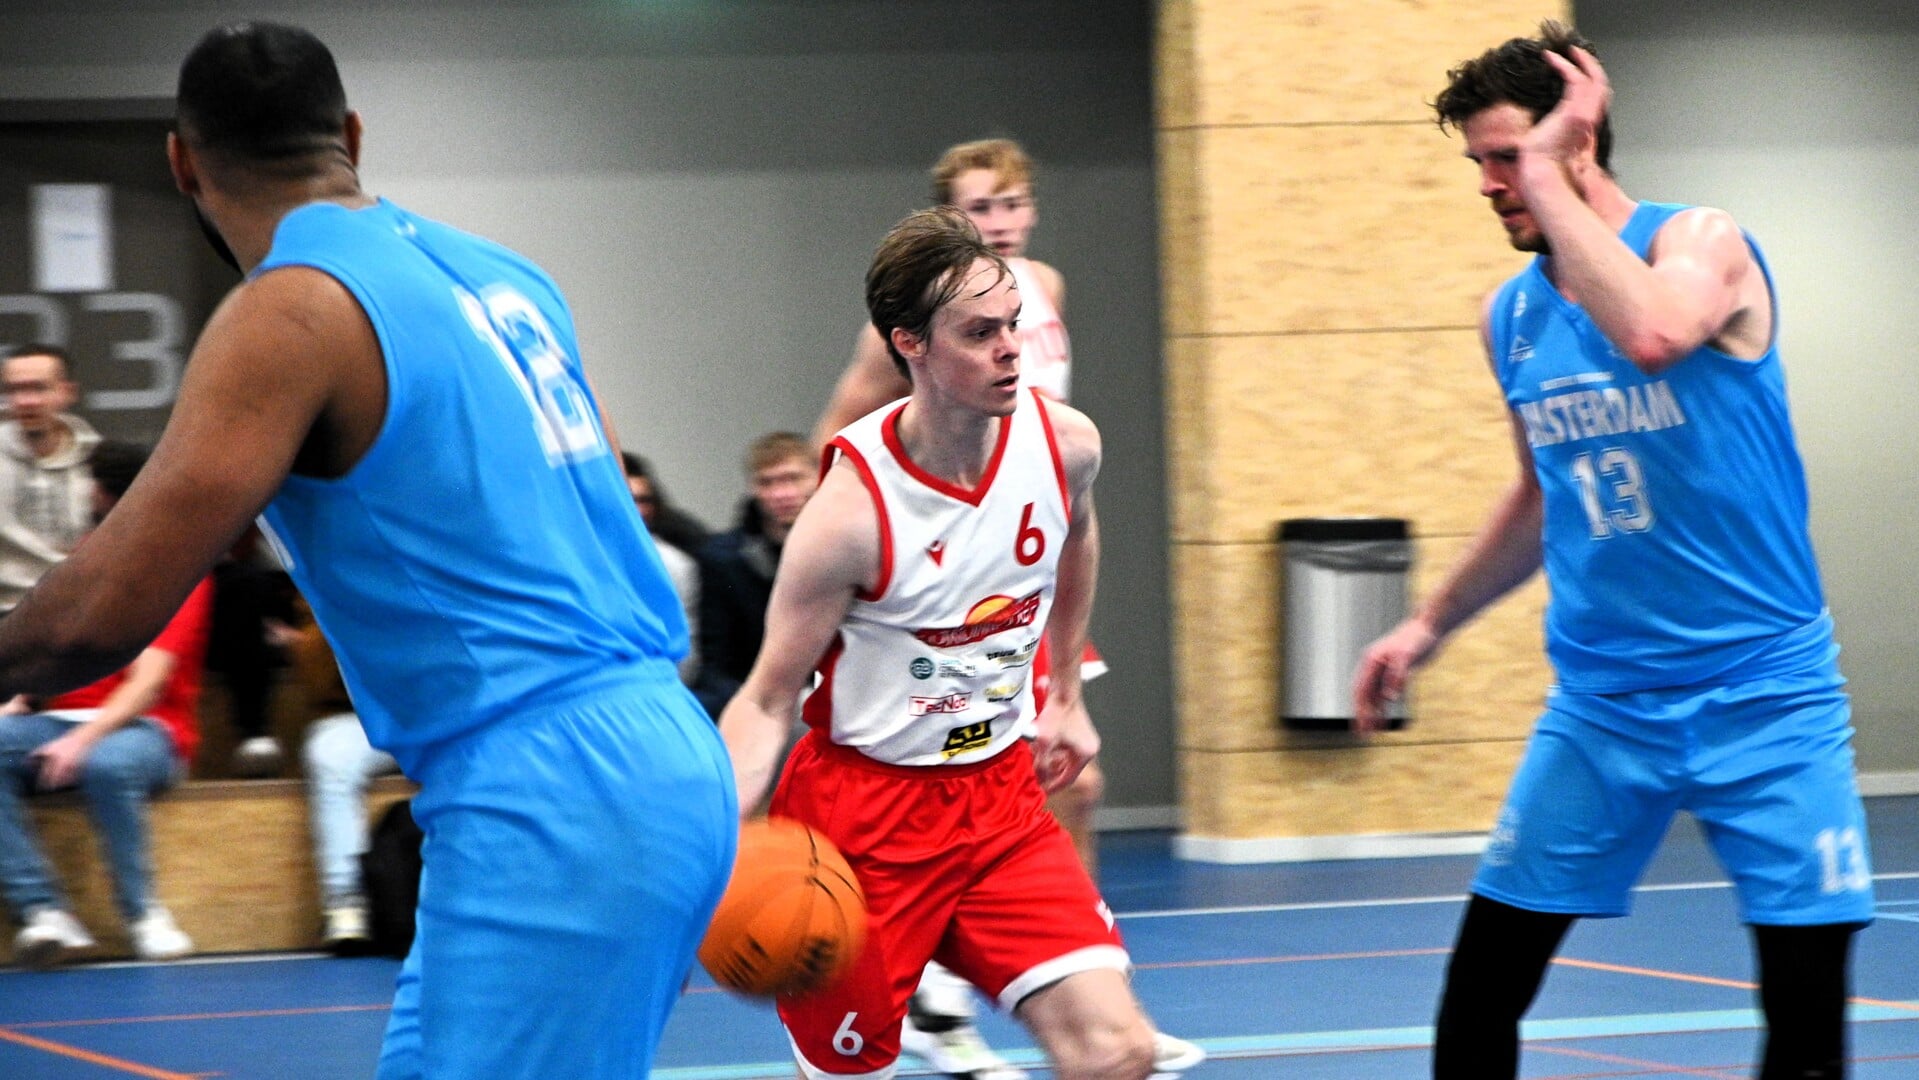 Lokomotief Mannen 1 speelt in de hoogste amateur basketbal competitie van Nederland.